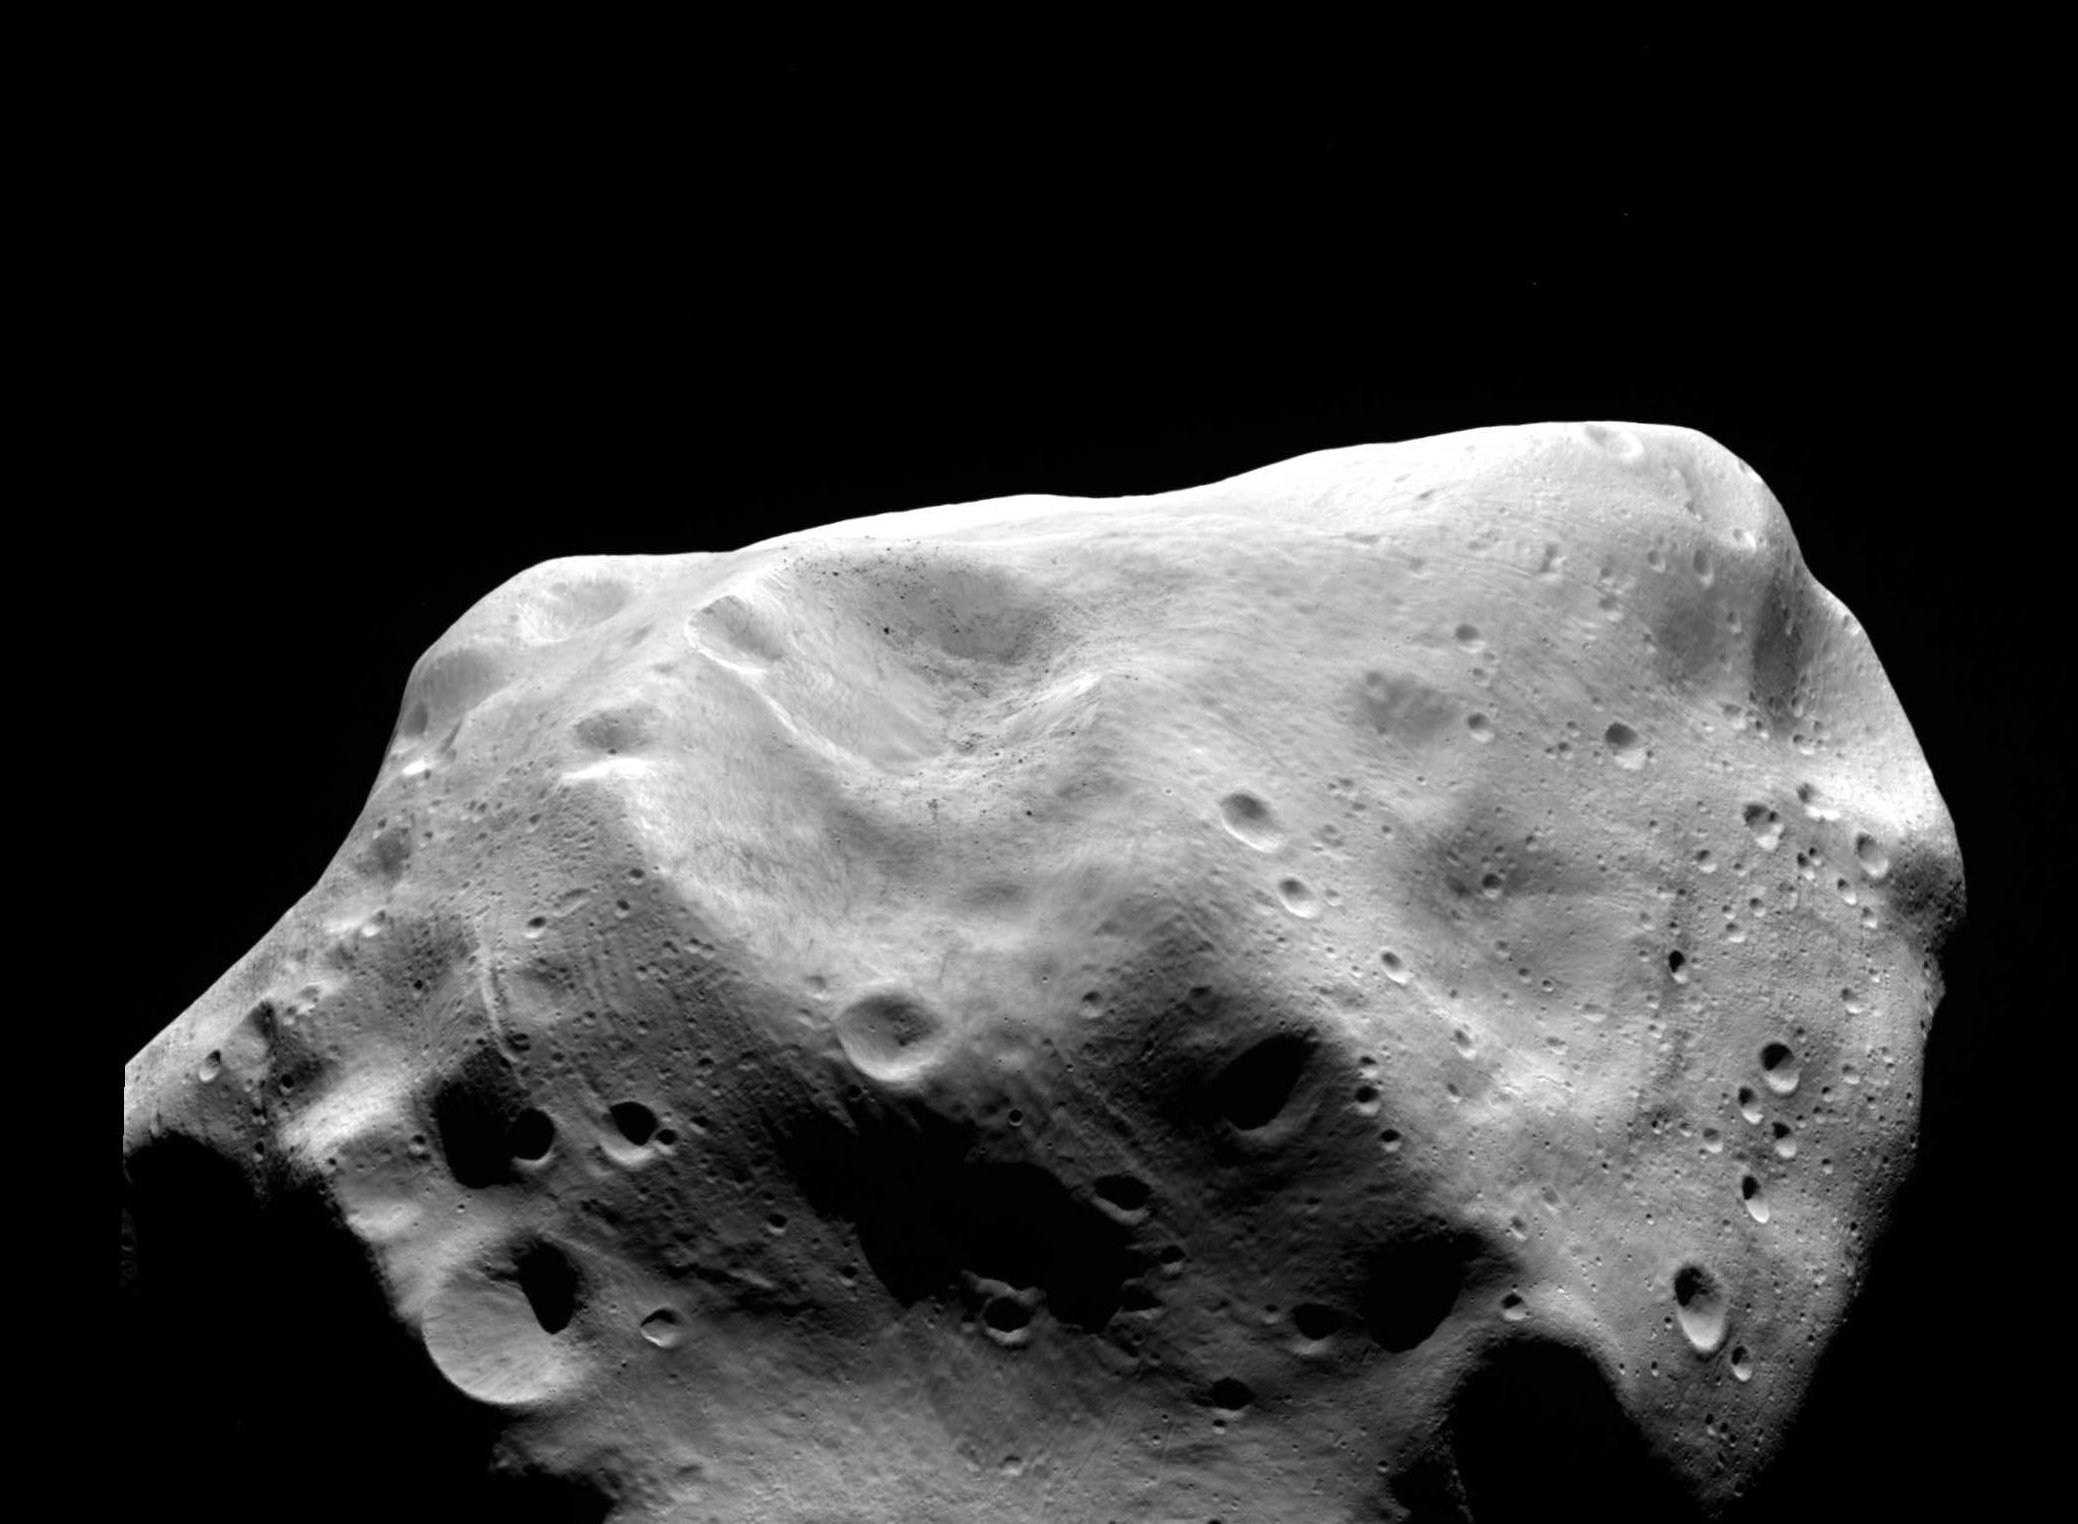 L'astéroïde de la ceinture principale 21 Lutetia, photographié ici par la sonde Rosetta de l'ESA au plus proche de l'objet en juillet 2010, a été identifié comme un reste de planétésimal des premières phases de notre Système solaire. Il n'a pratiquement pas changé depuis sa naissance il y a 4,5 milliards d'années. © ESA 2010 MPS pour l'équipe Osiris MPS/UPD/LAM/IAA/RSSD/INTA/UPM/DASP/IDA